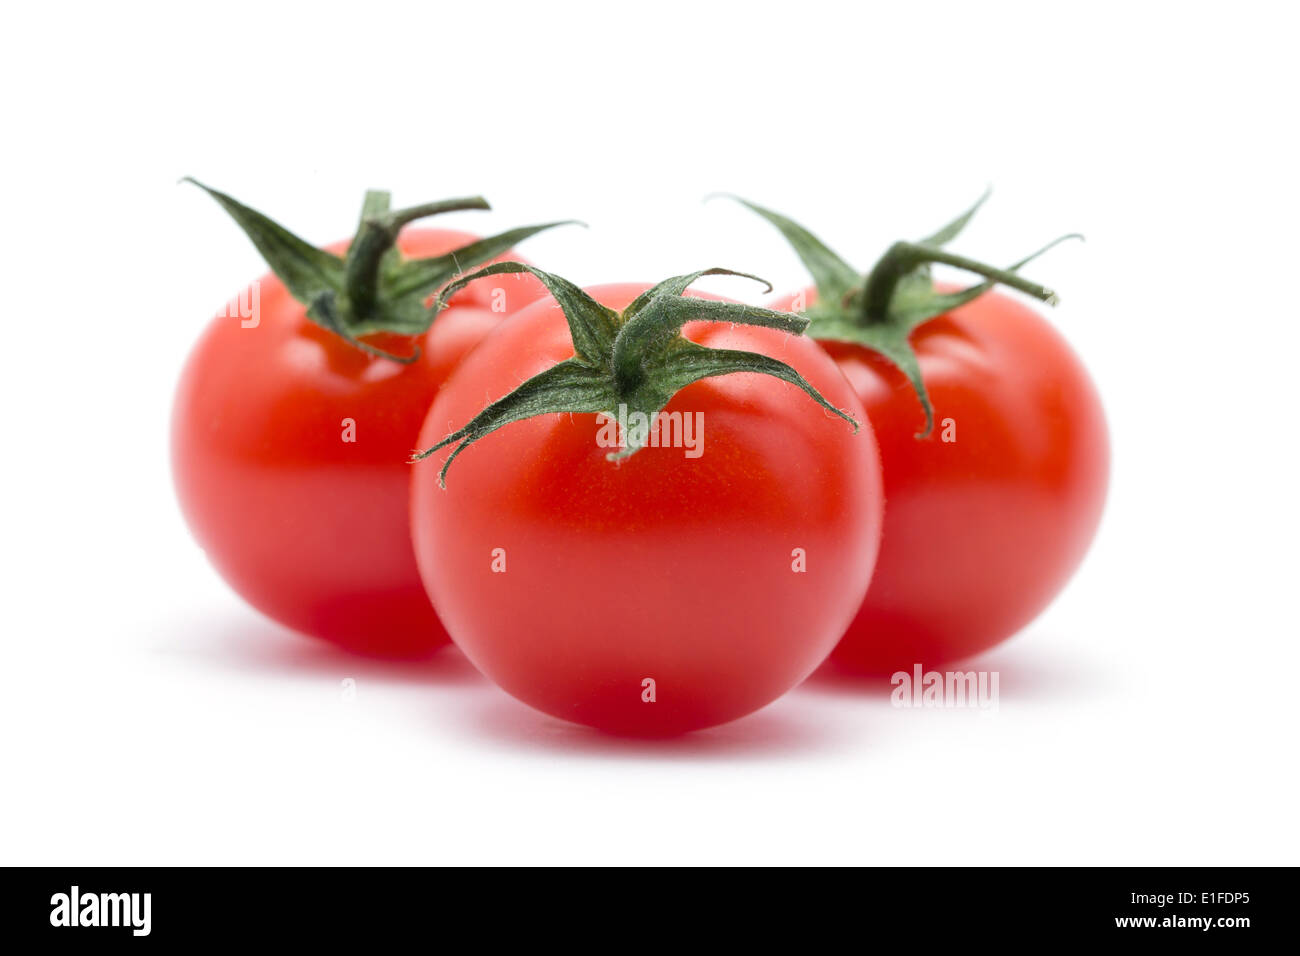 Cherry tomatoes on white Stock Photo